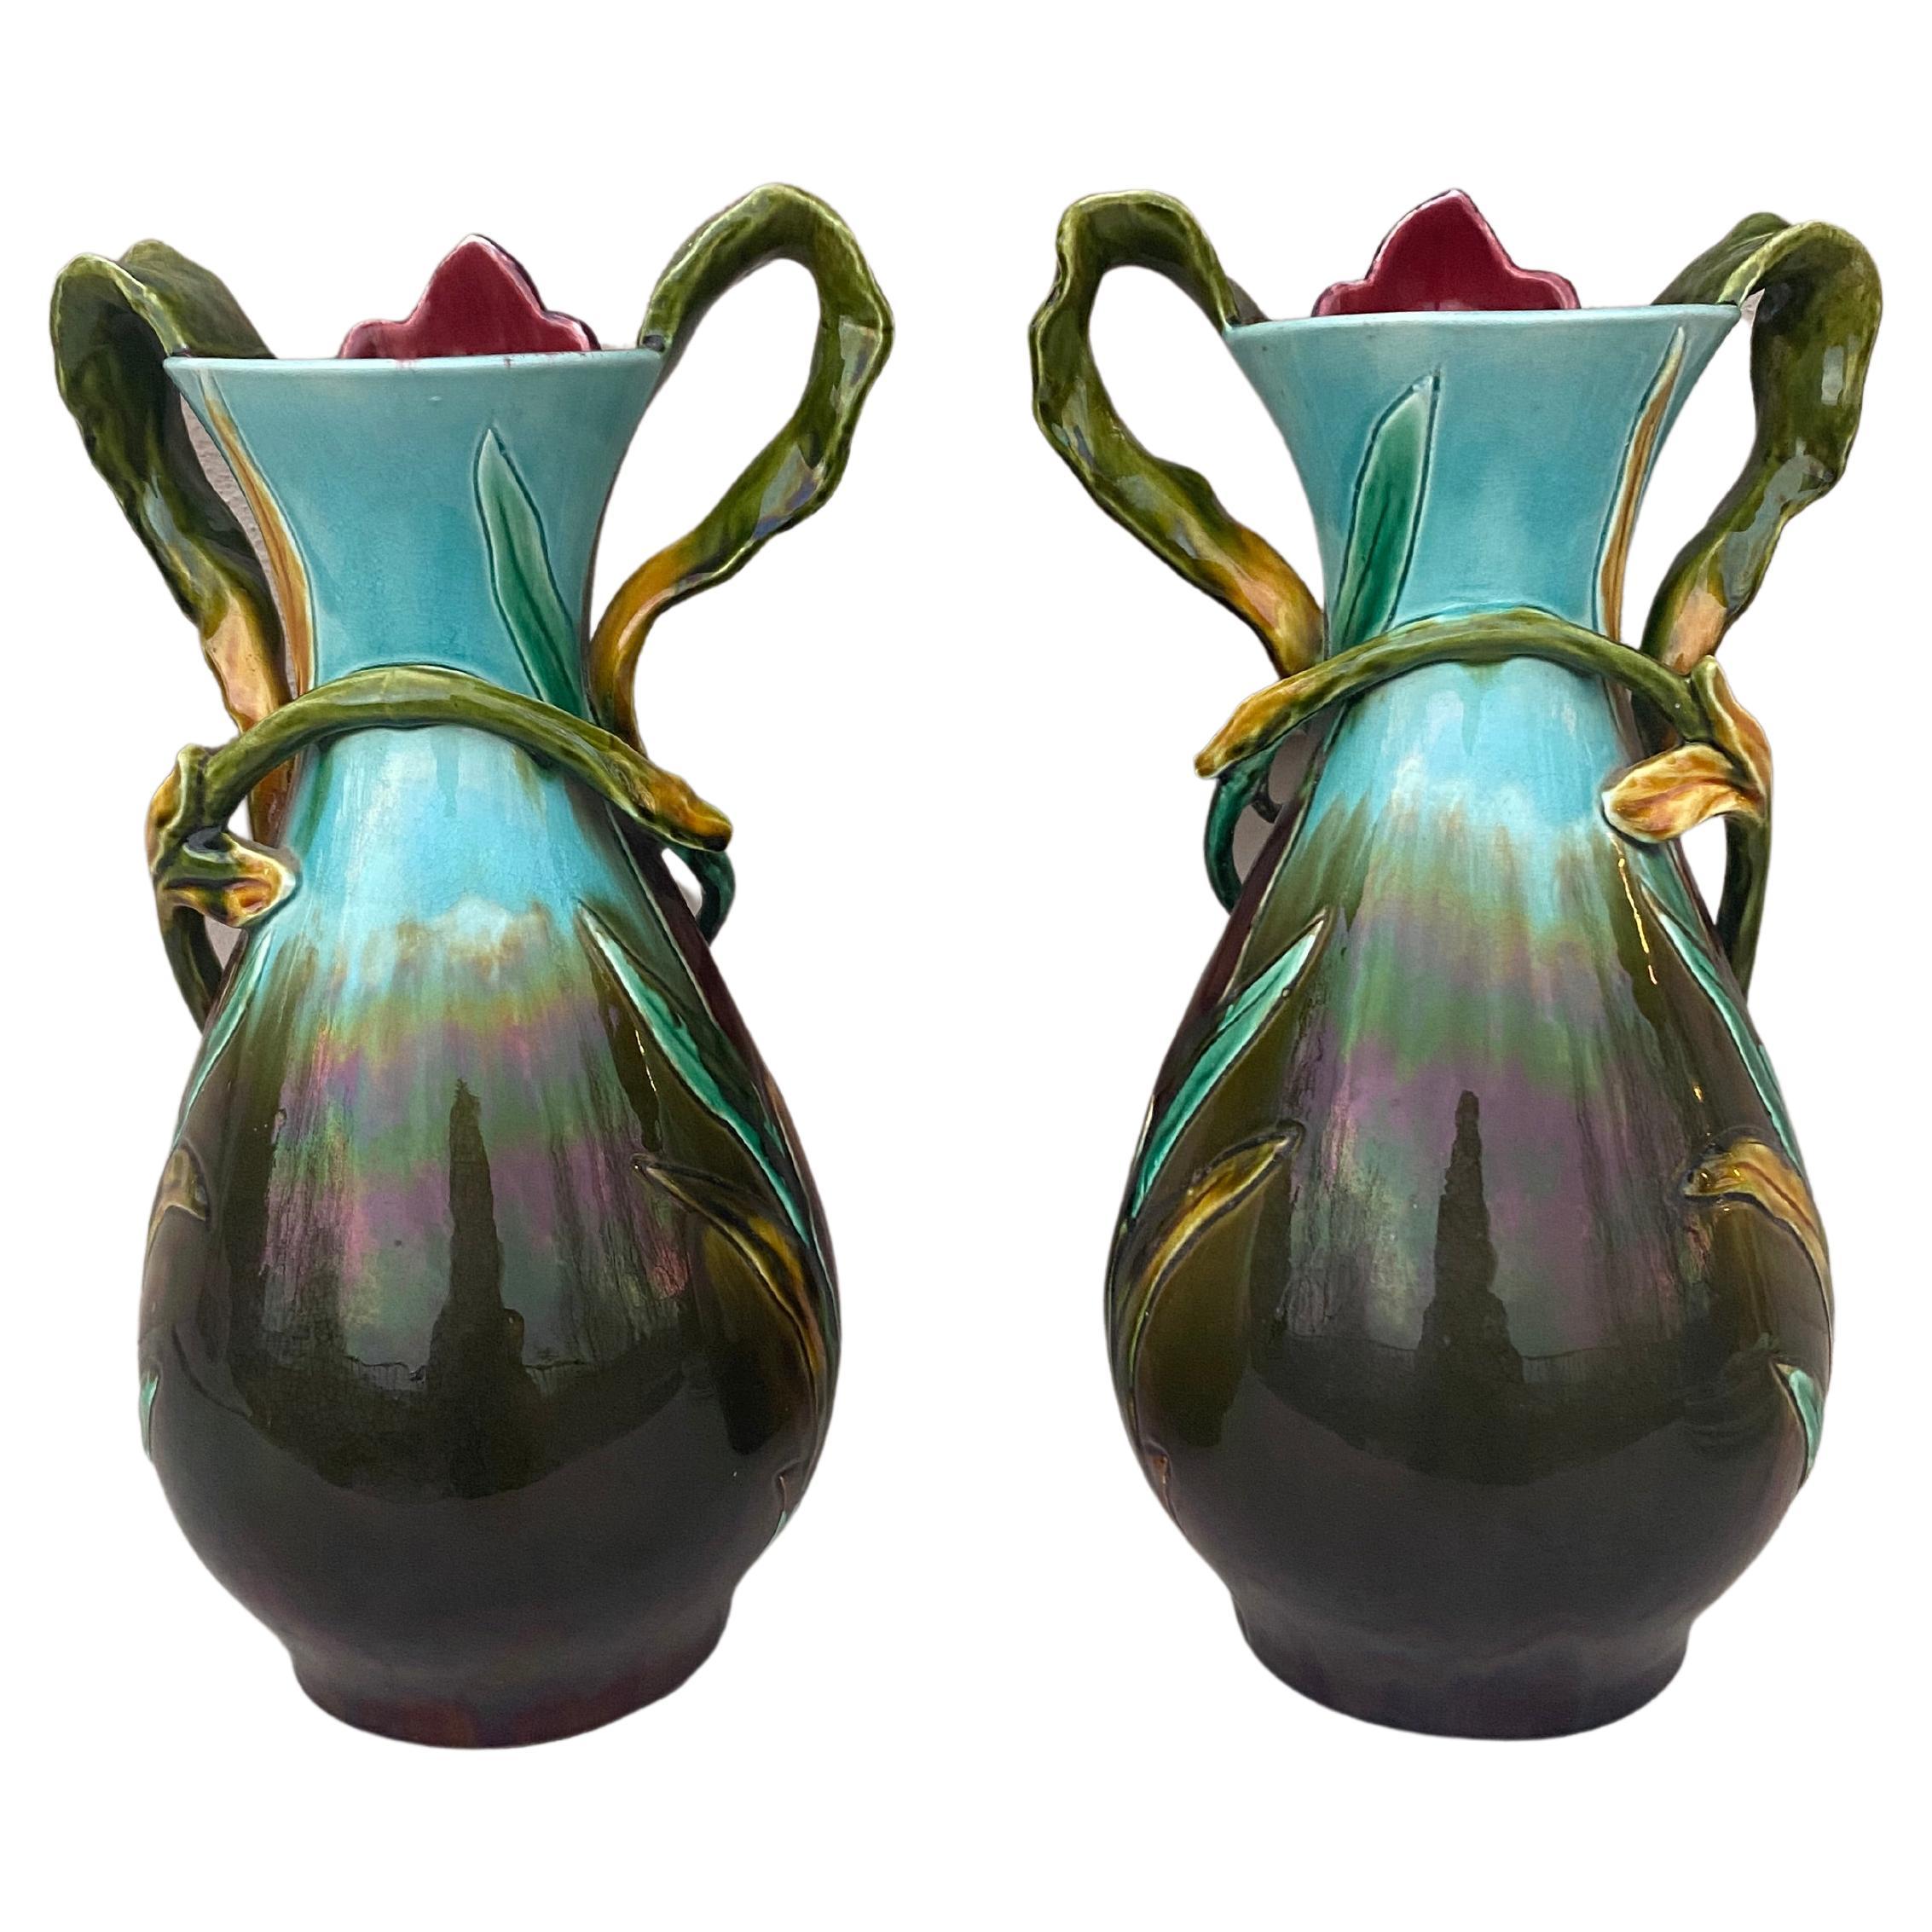 Grande paire de vases à iris en majolique française Orchies, vers 1890.
Hauteur / 13.5 pouces.